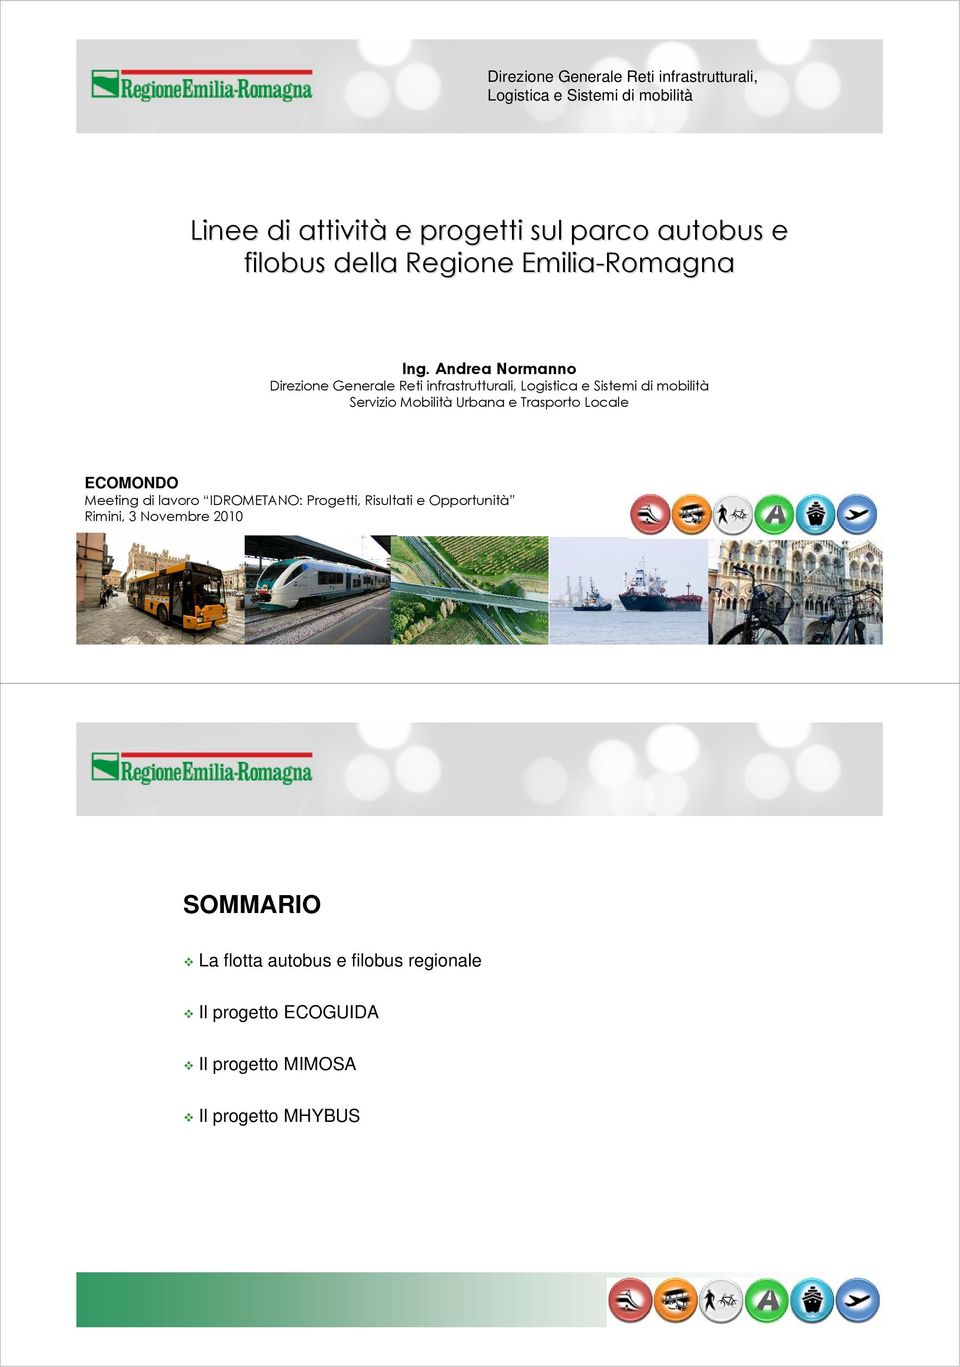 Andrea Normanno Direzione Generale Reti infrastrutturali, Logistica e Sistemi di mobilità Servizio Mobilità Urbana e